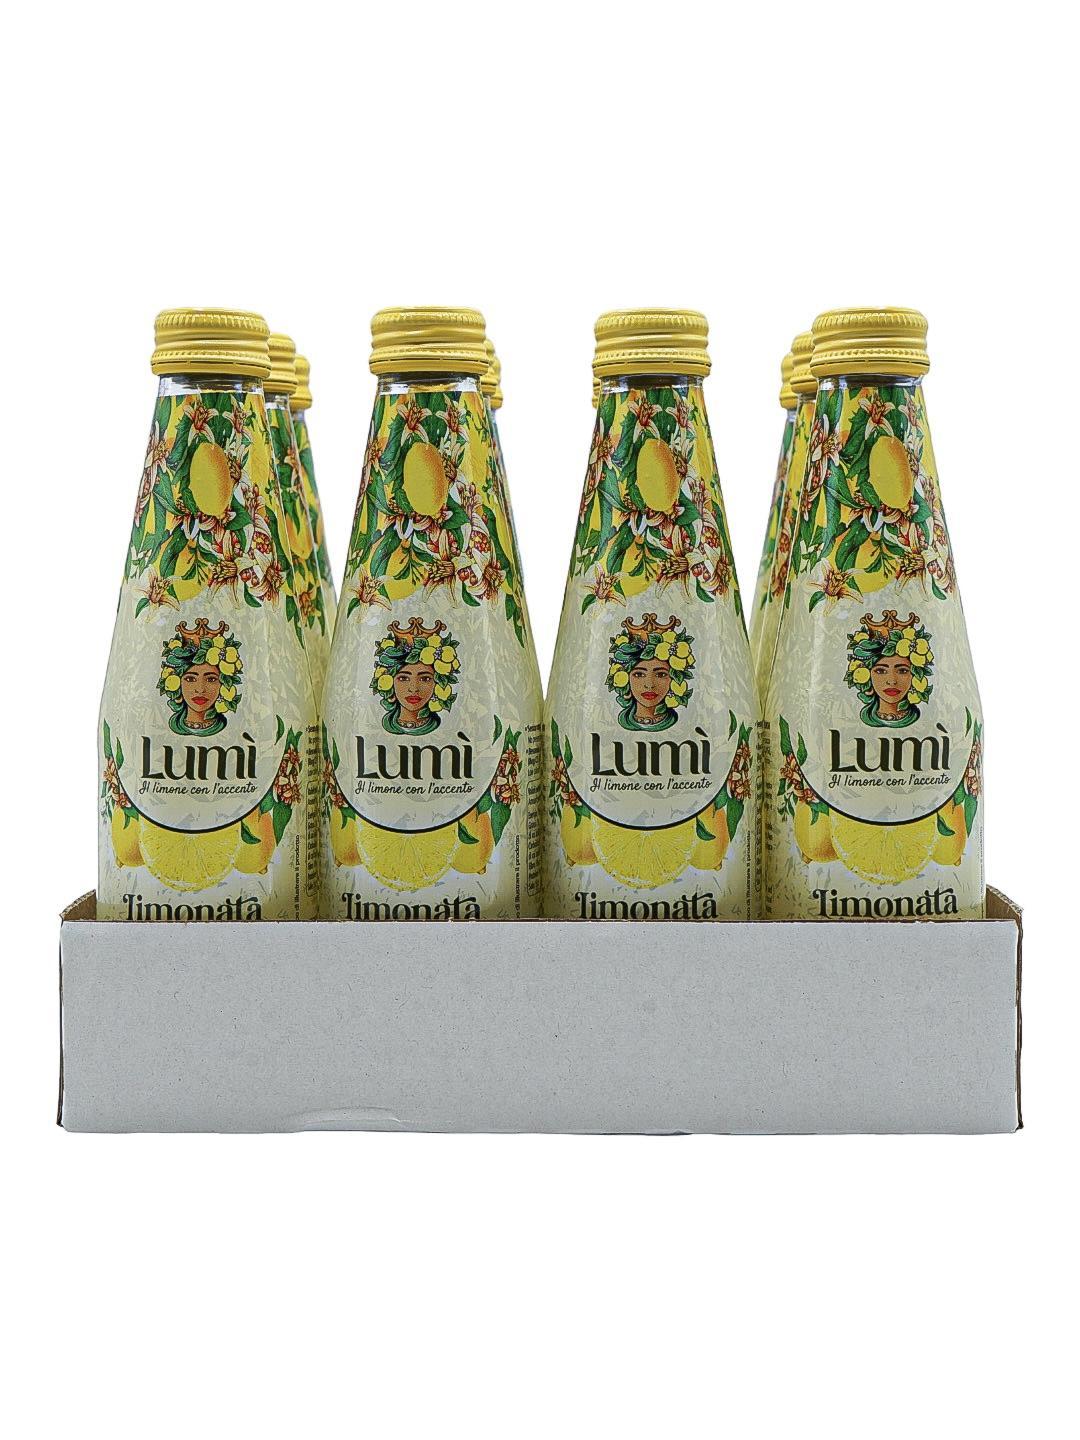 Limonata Fior di sale Lumi antica ricetta siciliana 12 bottiglie in vetro da 250ml